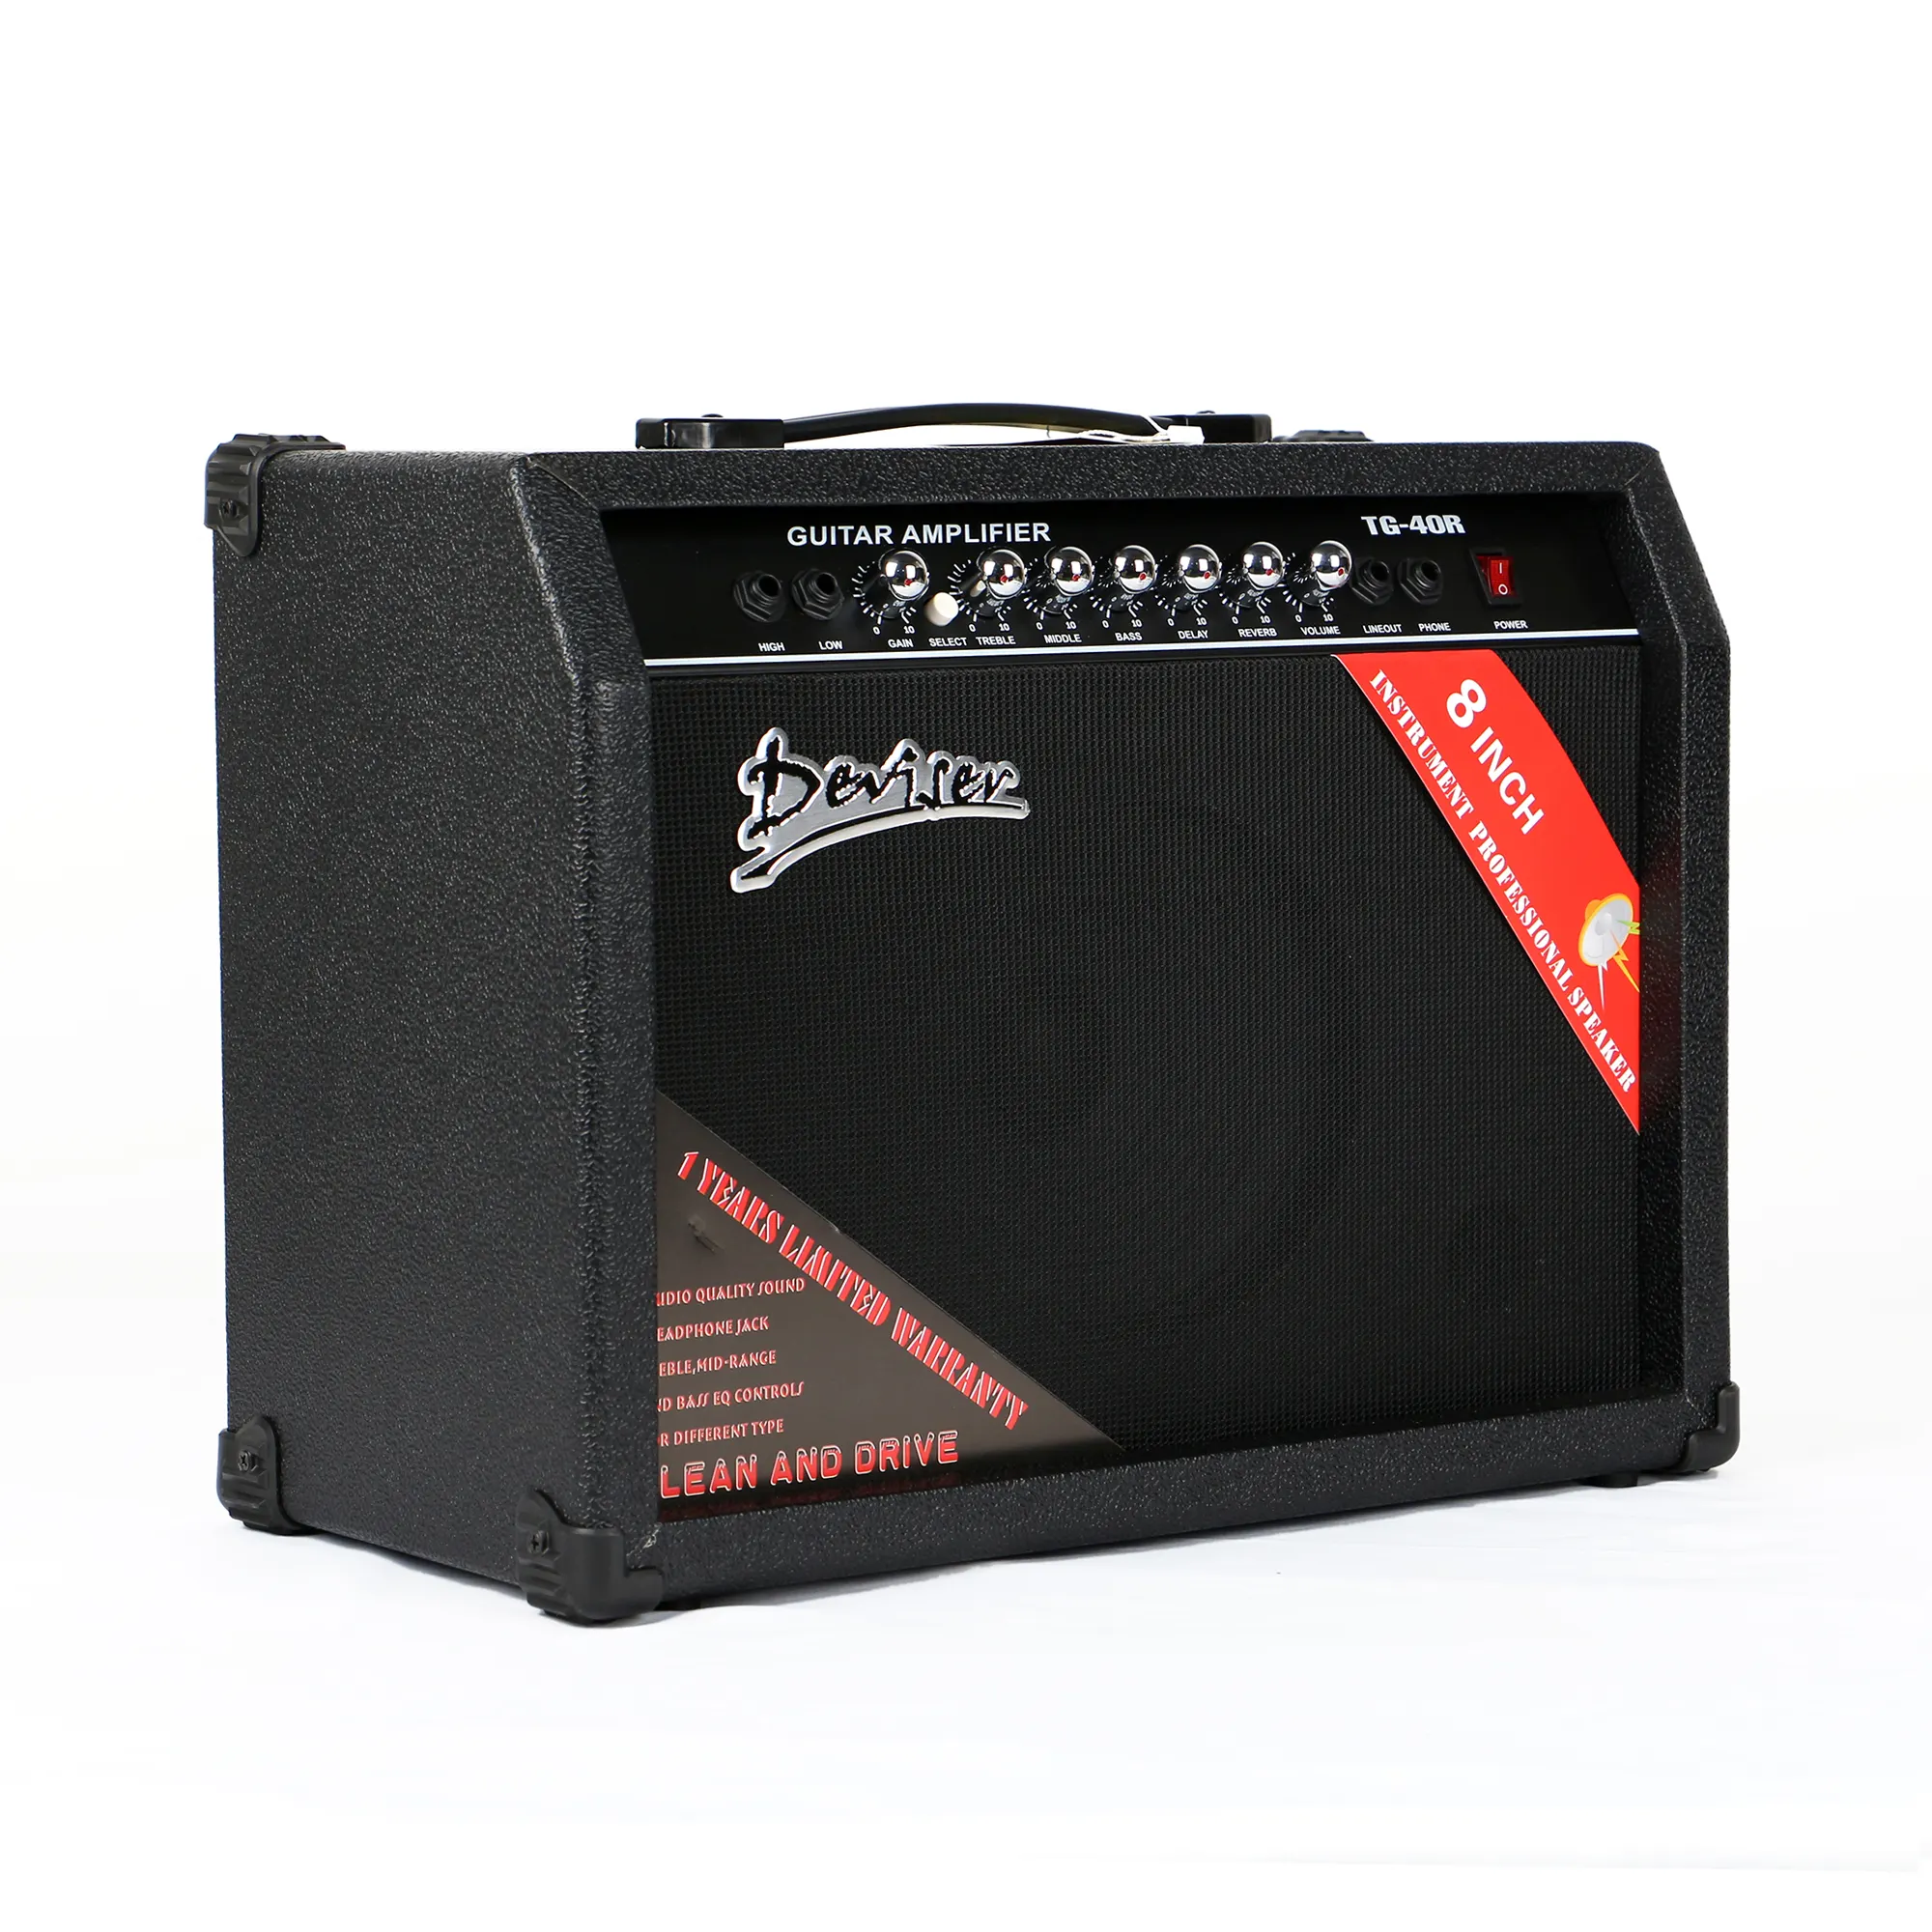 Commercio all'ingrosso ideatore amplificatore 40W amplificatore per chitarra elettrica acustica/basso amplificatore per chitarra